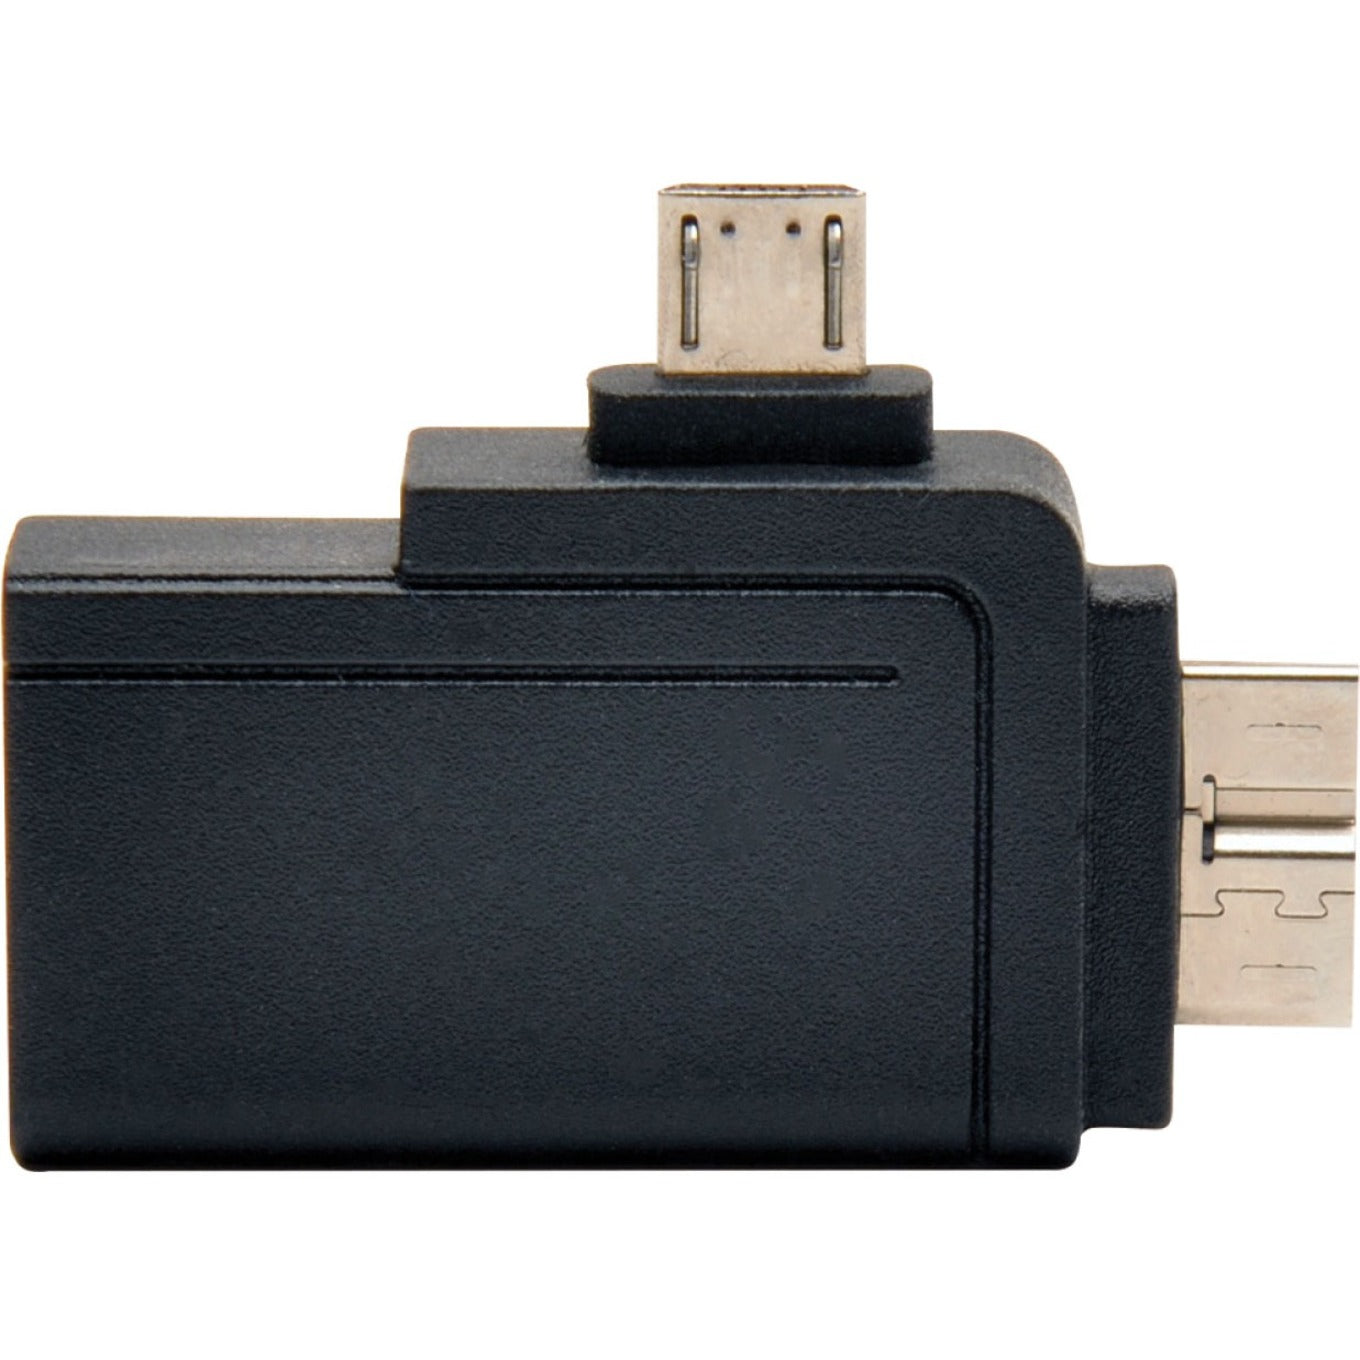 Tripp Lite U053-000-OTG 2-en-1 Adaptateur OTG USB 3.0 + 2.0 Adaptateur de transfert de données